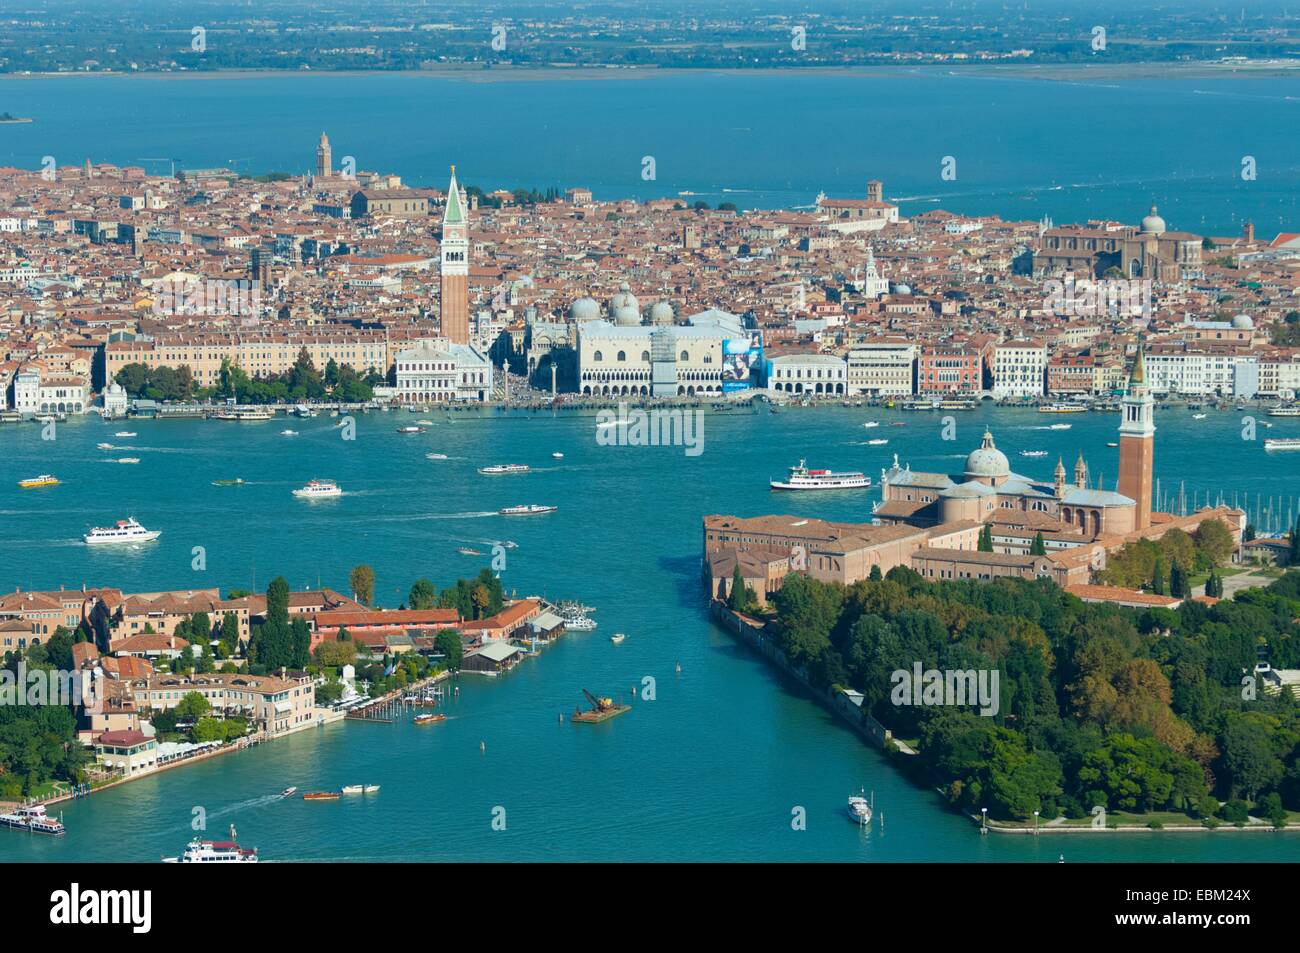 Aerial view of Giudecca, San Giorgio Maggiore and Venice, Italy, Europe Stock Photo